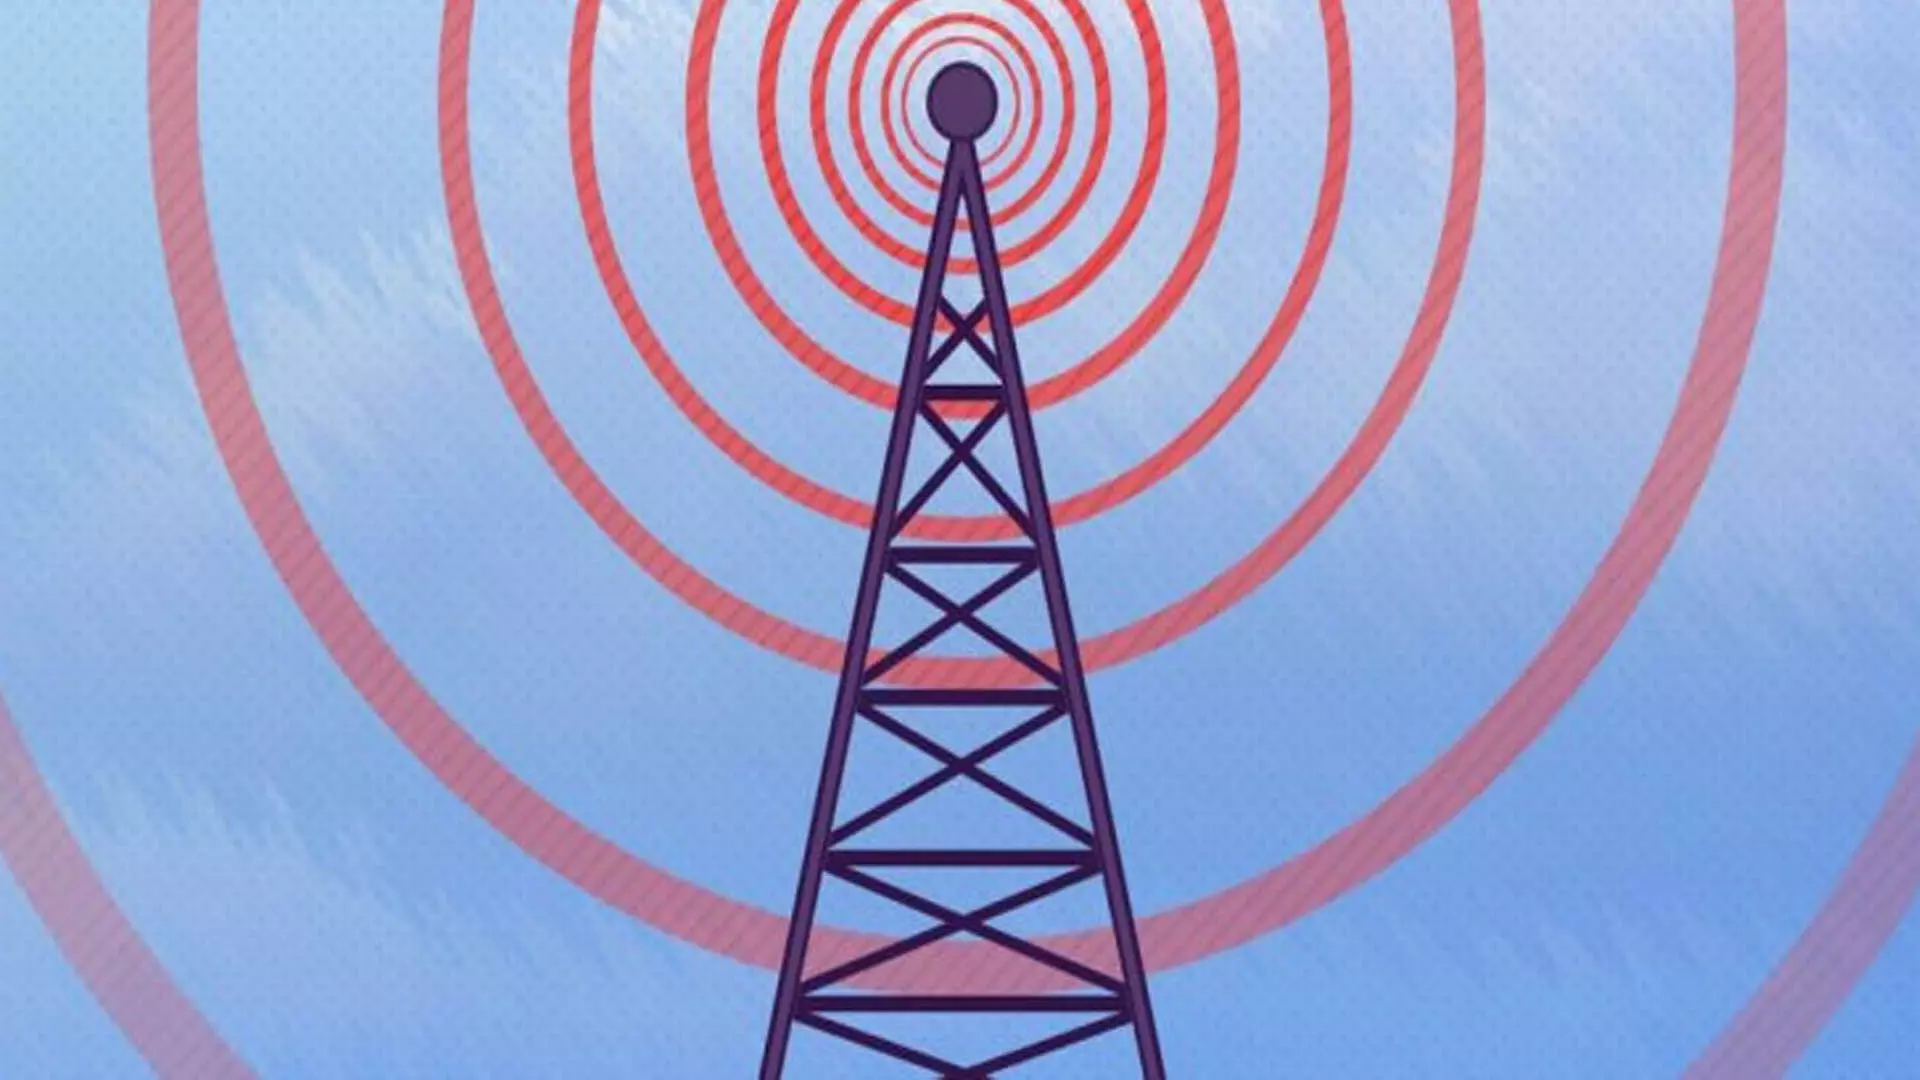 Delhi News: स्पेक्ट्रम नीलामी में 11,340.78 करोड़ रुपये मूल्य की 141.4 मेगाहर्ट्ज रेडियो तरंगें बिकीं